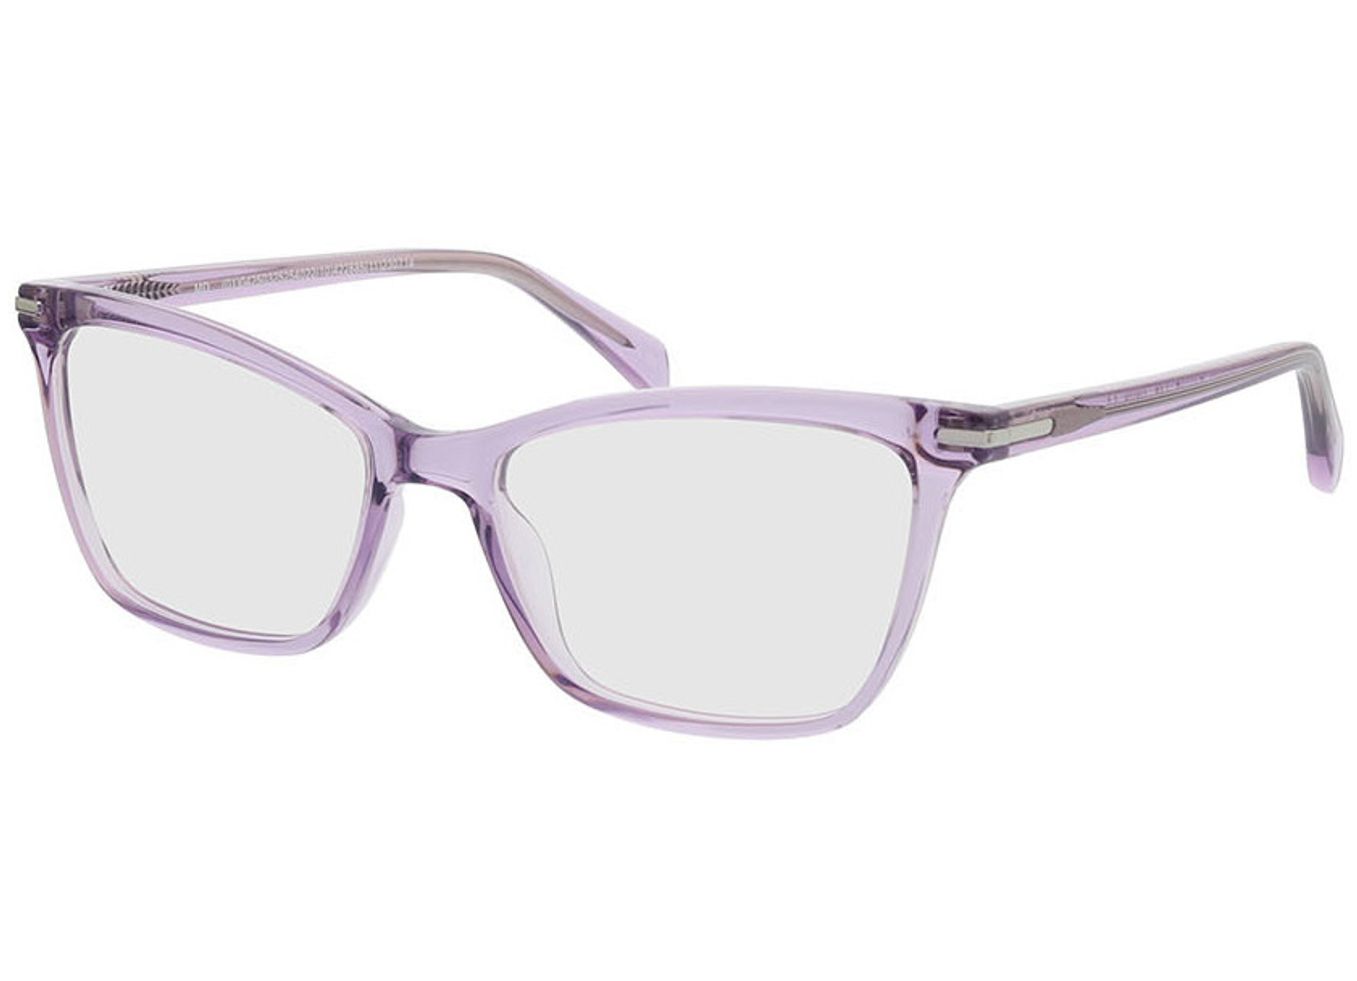 Aurora - flieder Gleitsichtbrille, Vollrand, Cateye von Brille24 Collection